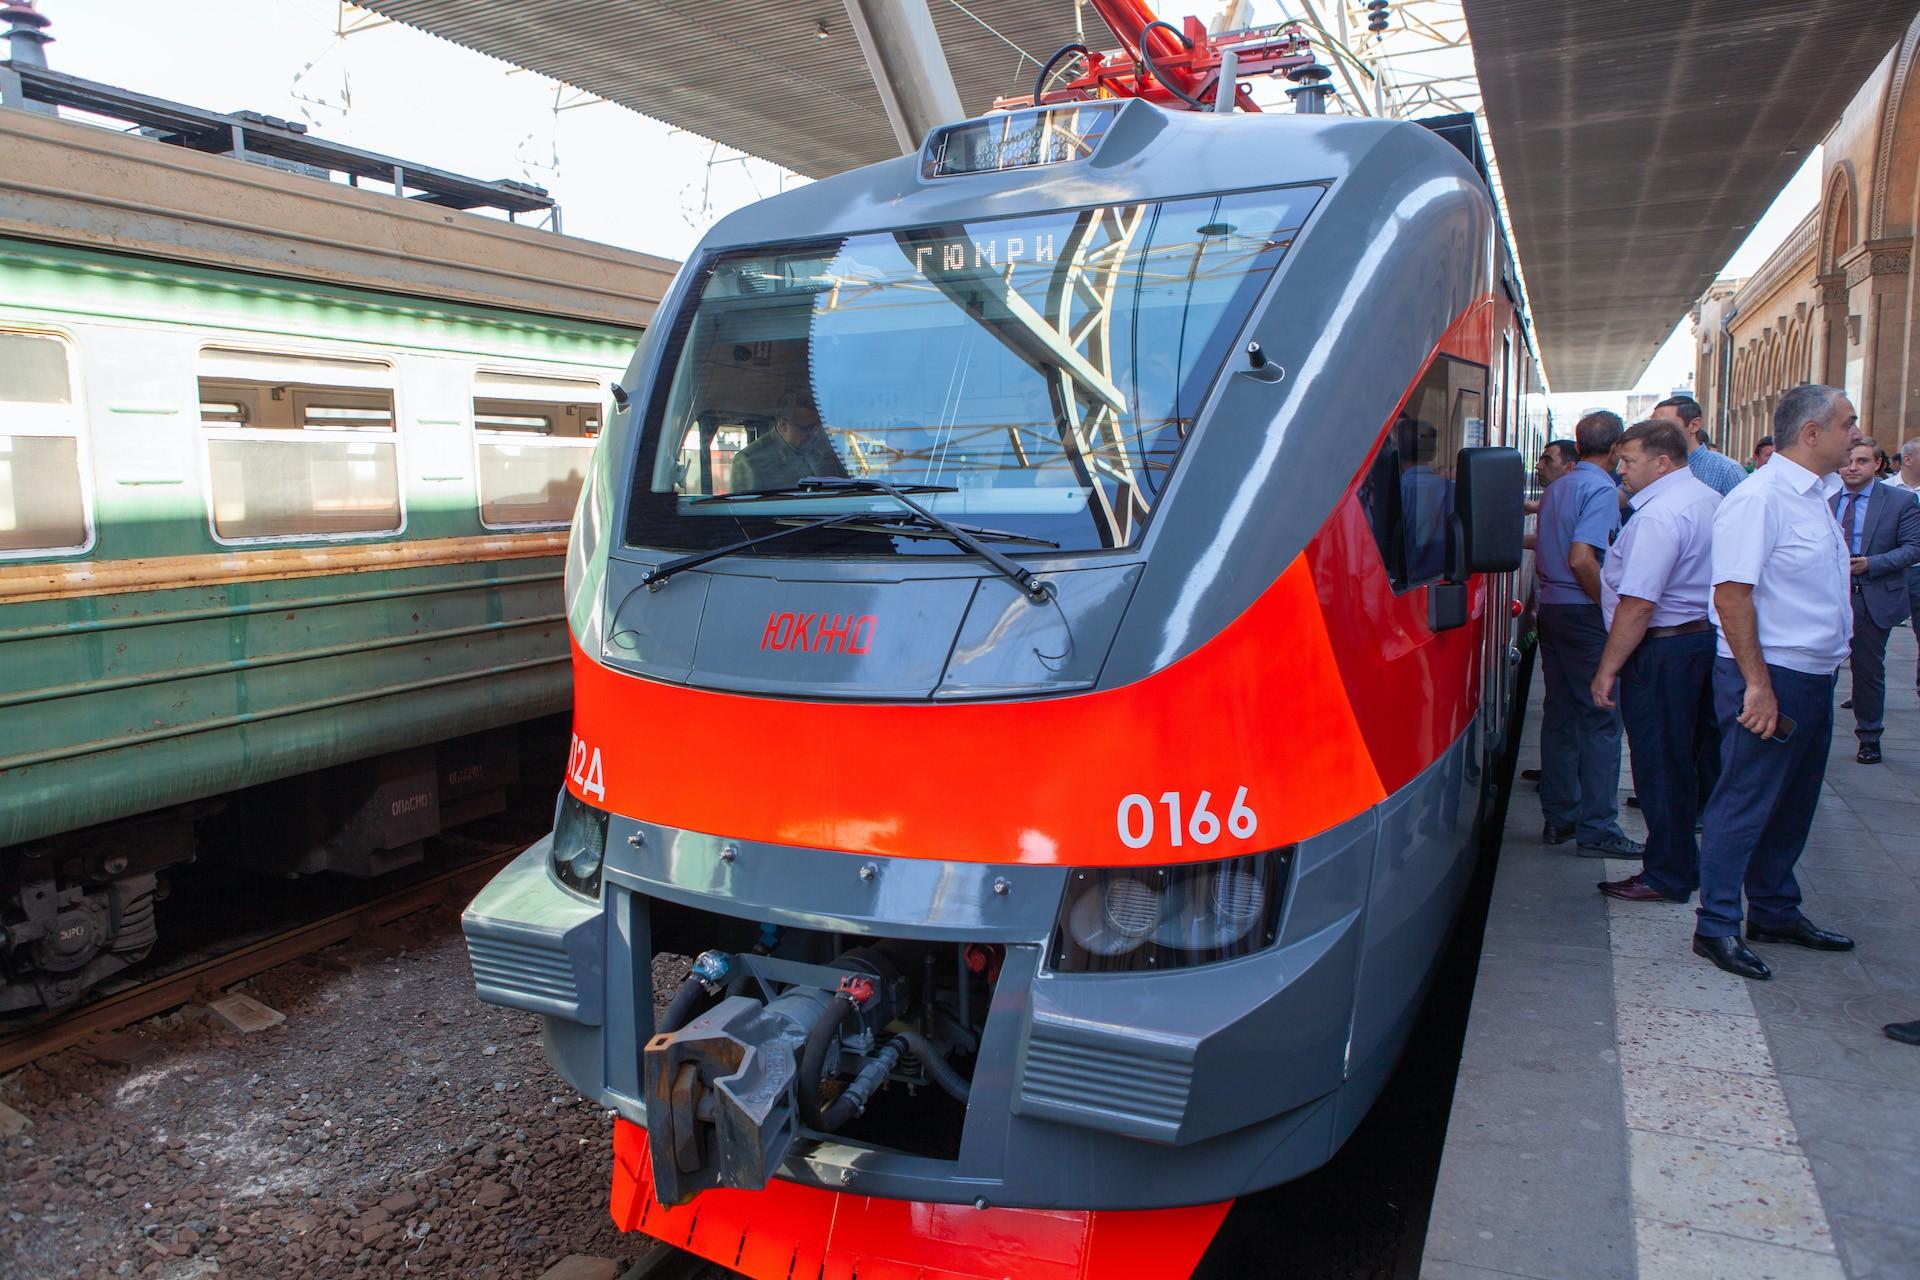 Train to Armenia: 3 Days in Yerevan — xyzAsia